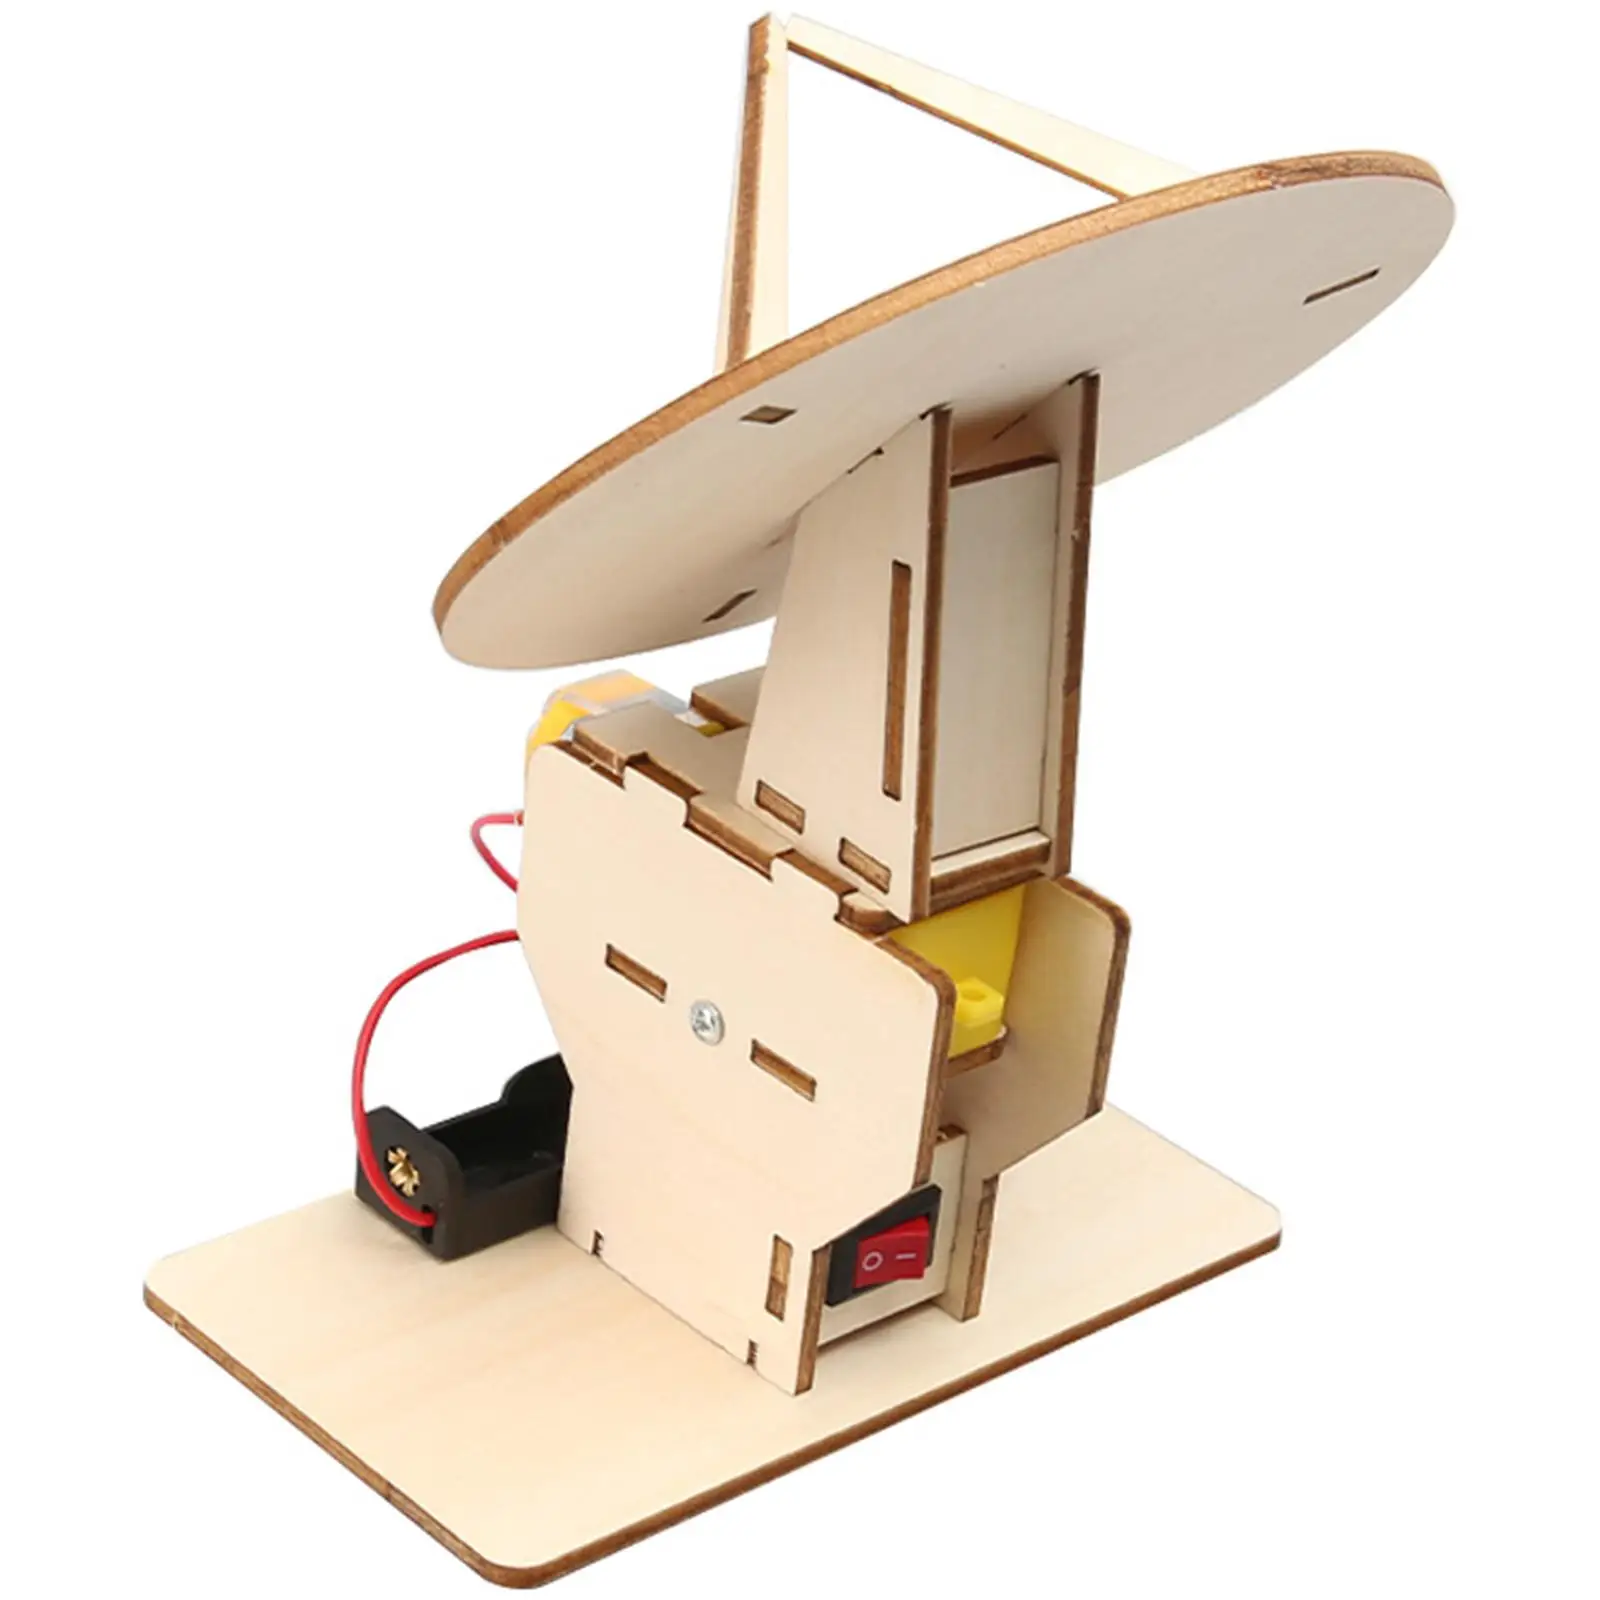 Стволовые Игрушки DIY Поставки Строительные Наборы Stem Project Education Toy Self Assembly Radar Toy Science Experiment Kits для Детской Школы